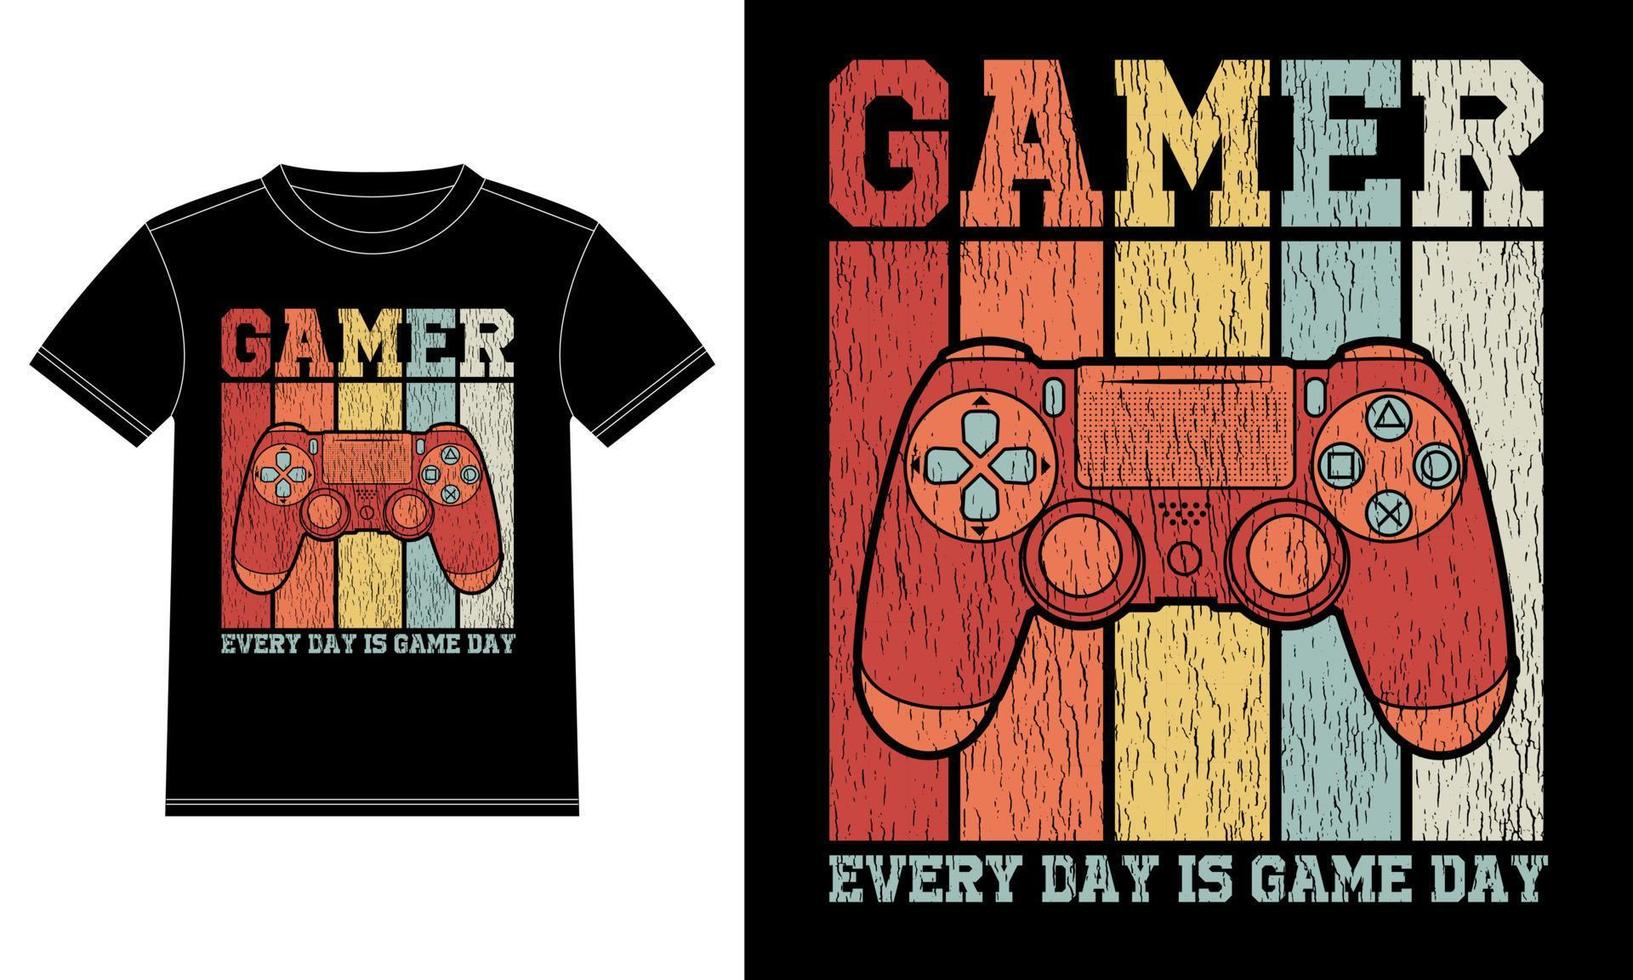 gamer-typografie jeden tag ist spieltag t-shirt designvorlage, autofensteraufkleber, pod, cover, isolierter schwarzer hintergrund vektor